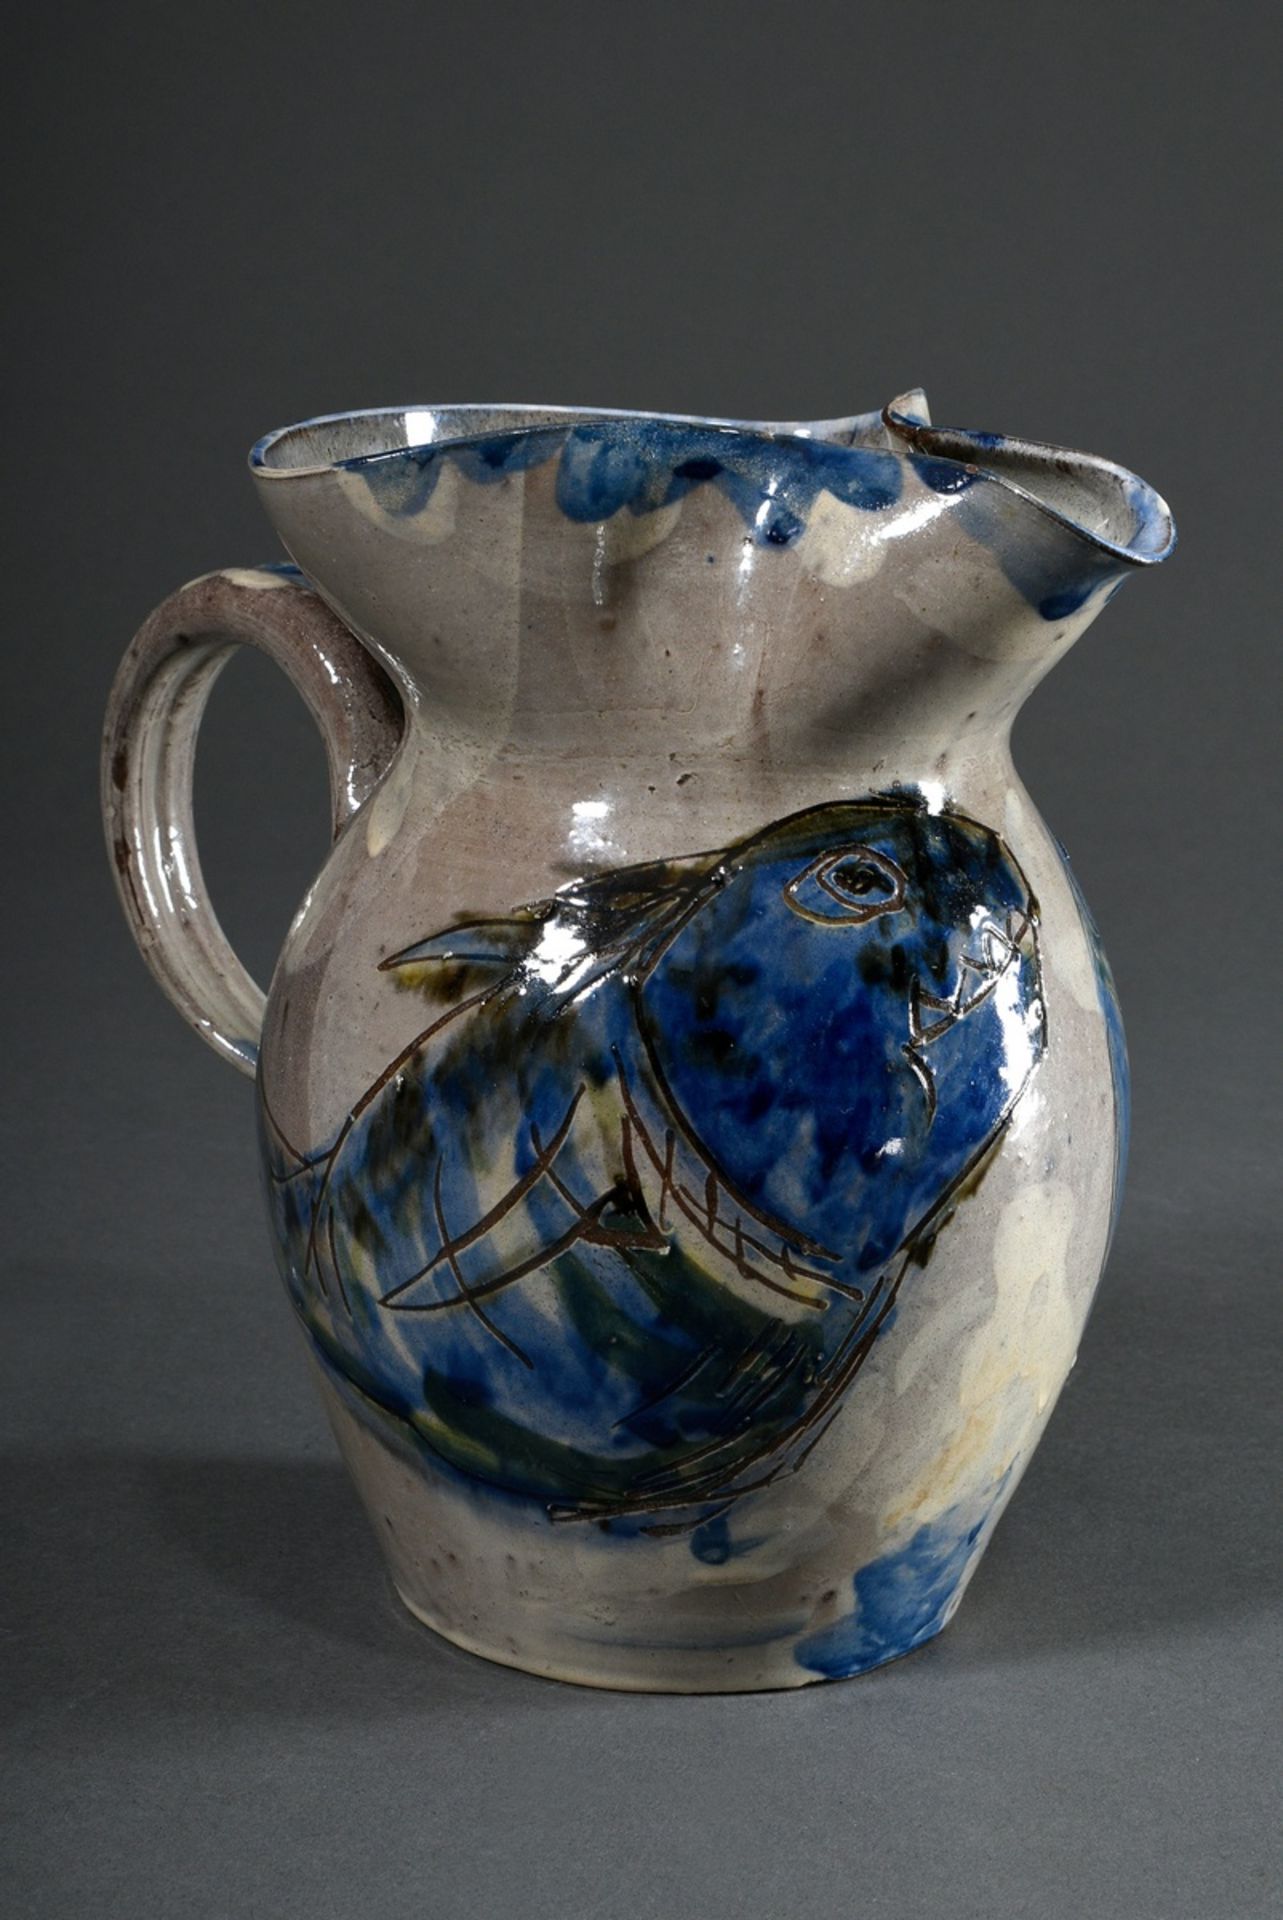 Hops, Tom (1906-1976) Jug "Fishes" 16.3.67, ceramic, colour glazed, bottom signed/dated, h. 18,8cm - Image 2 of 6